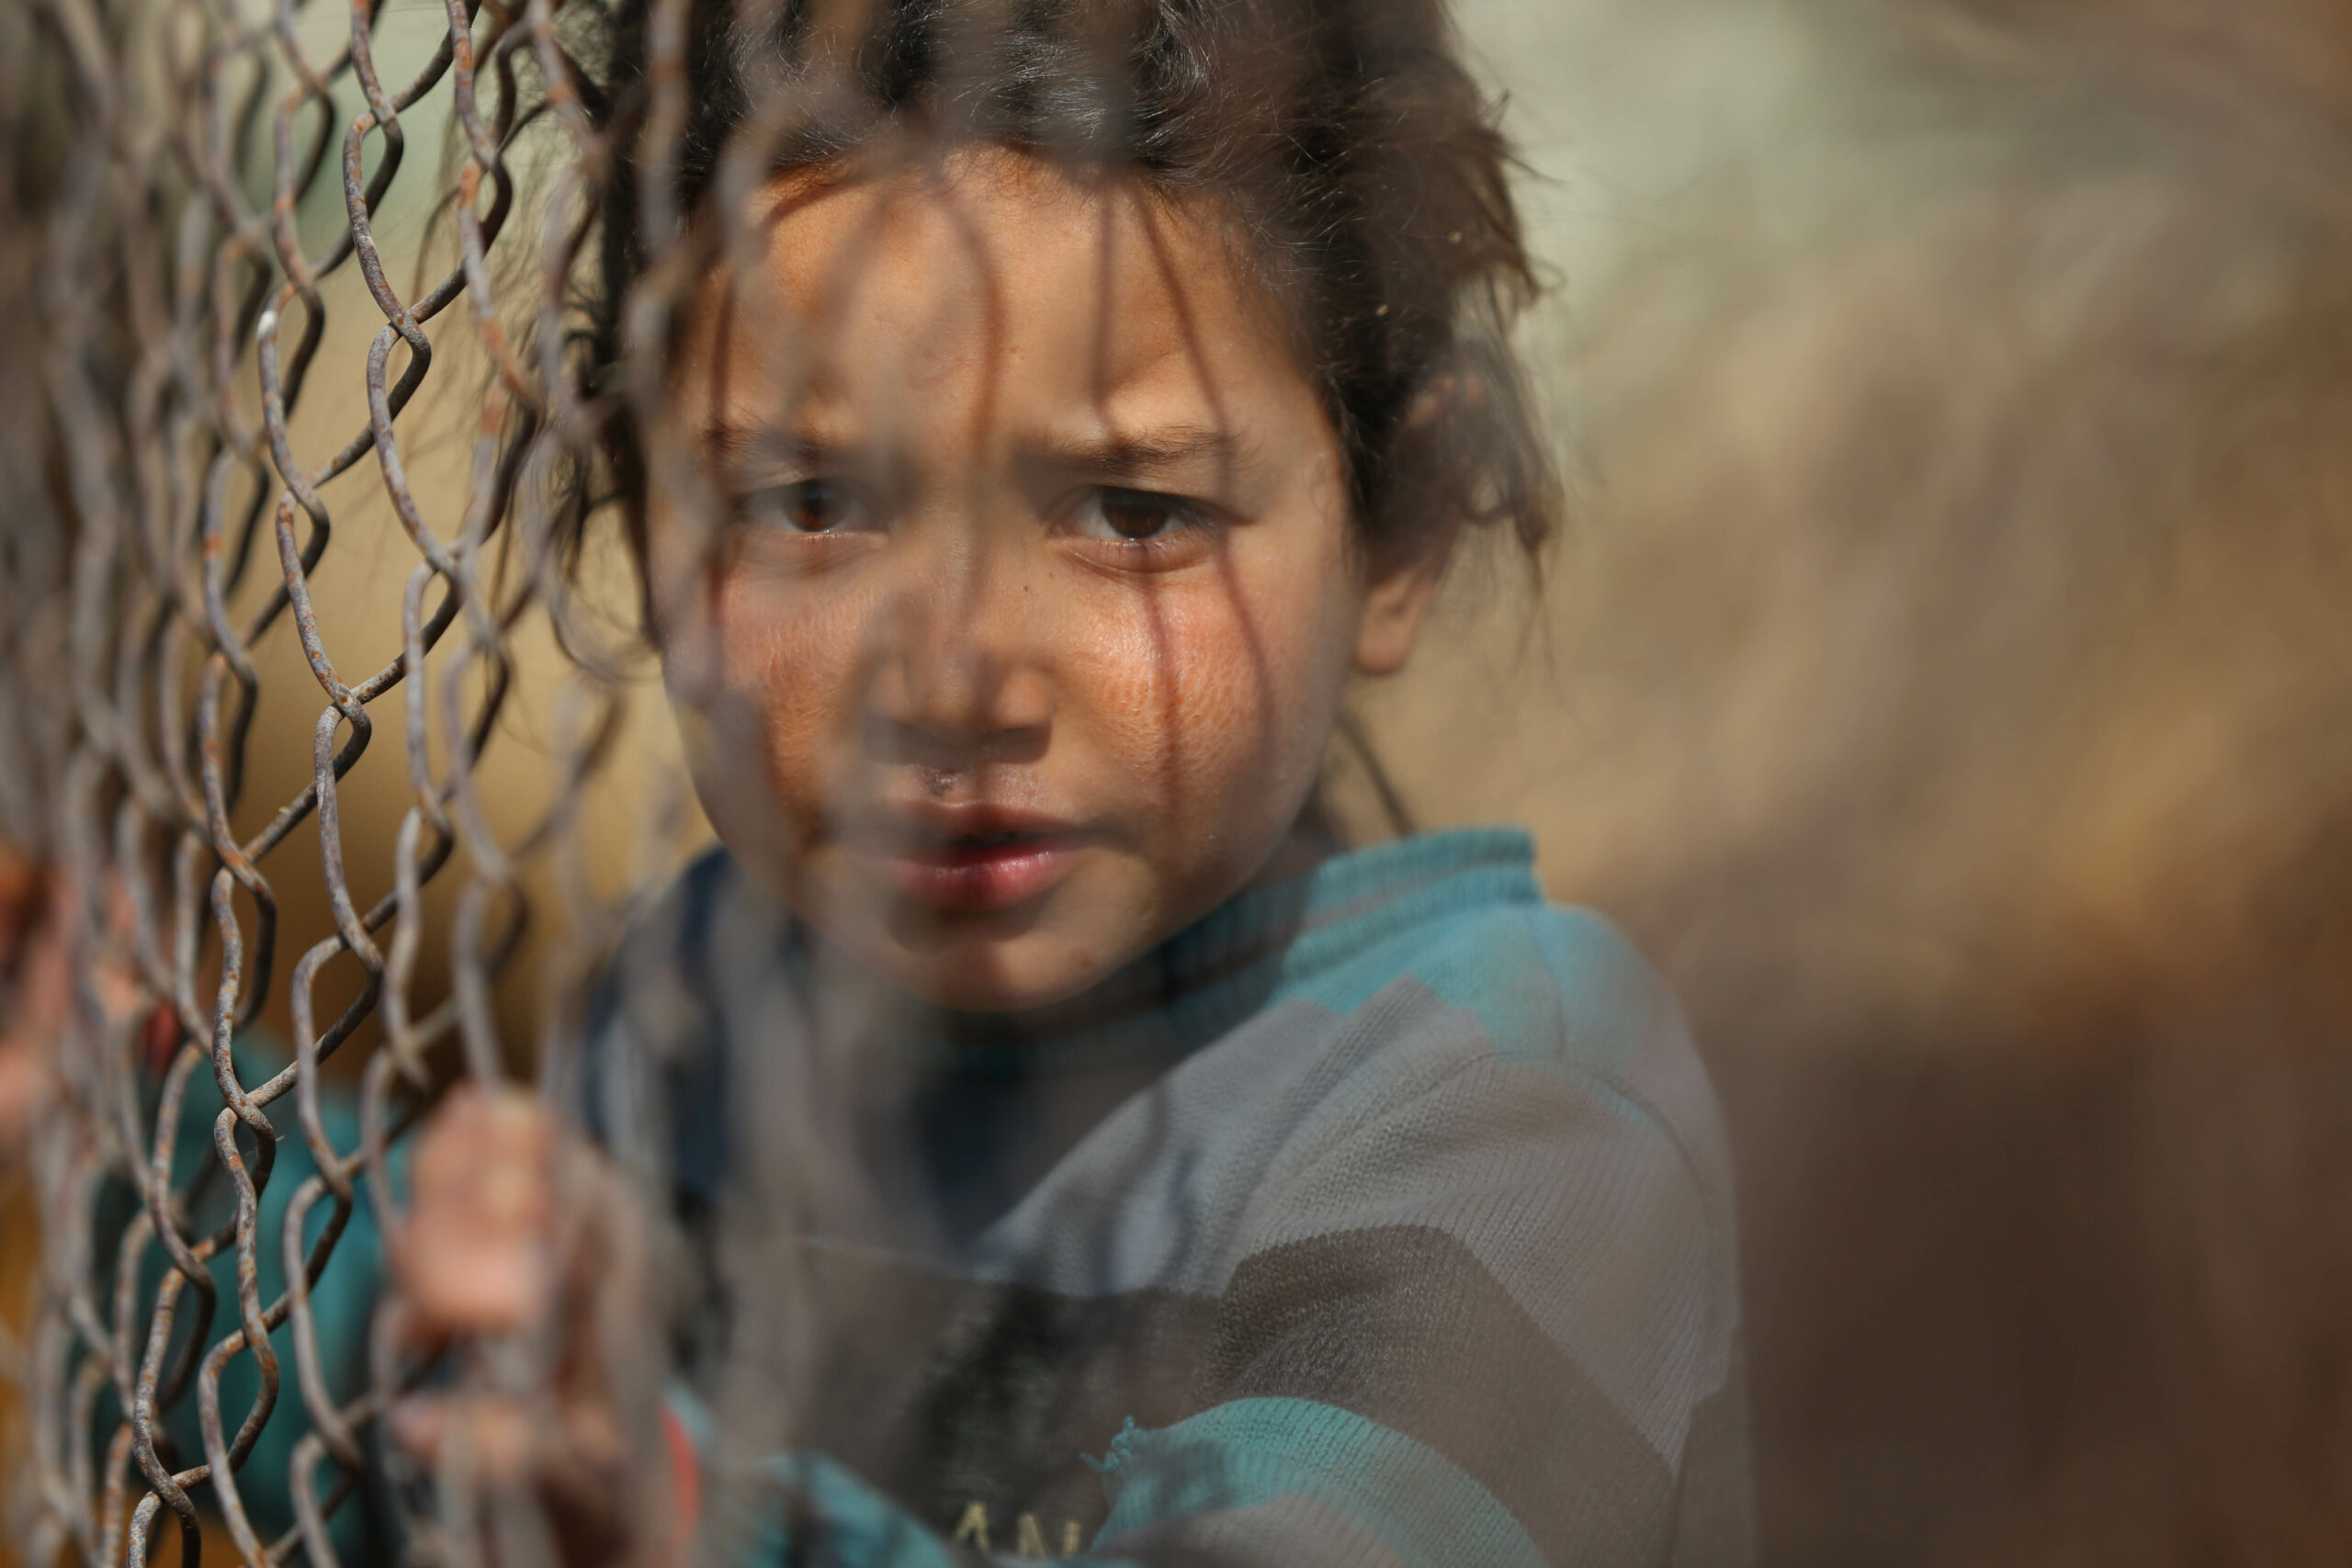 Criança atrás de vedação na Síria